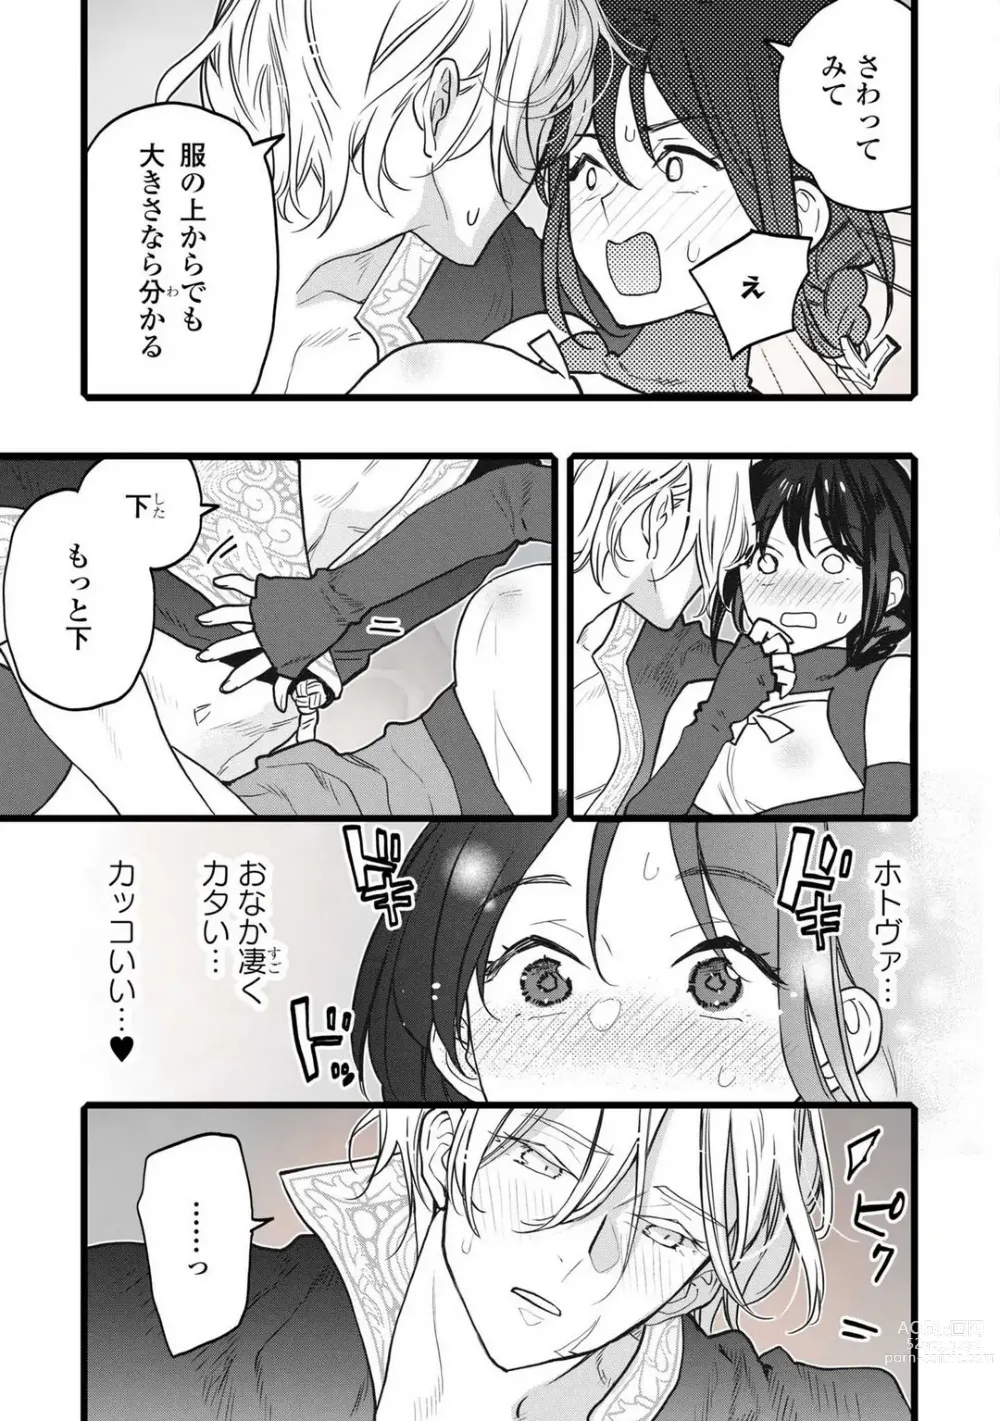 Page 203 of manga Koisuru Himon no Senshi-Tachi 1-6